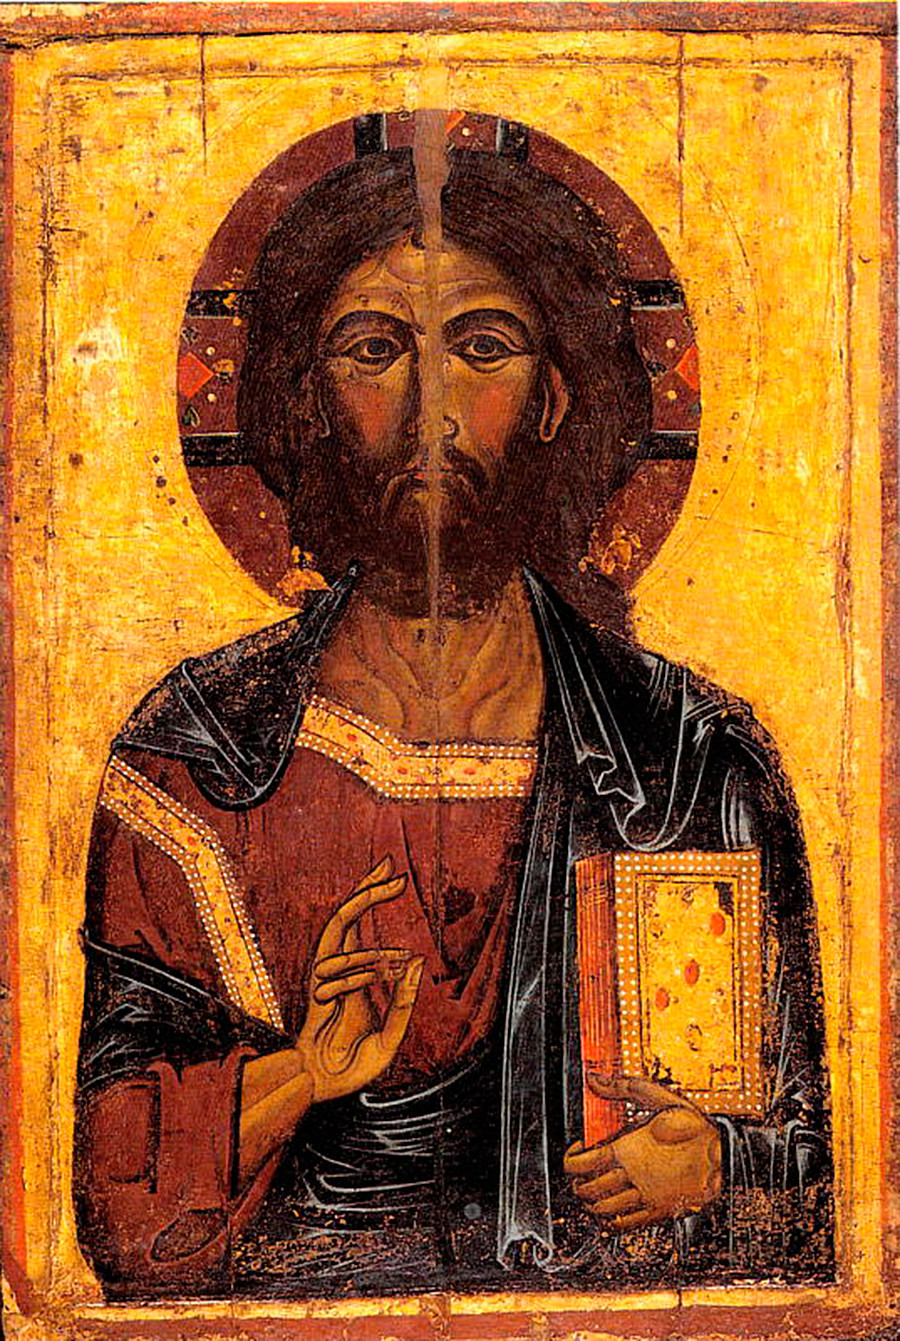 L'oggetto più antico del museo: un'icona del XIII secolo del Cristo Pantocratore di Gavshinka (un villaggio vicino alla città di Jaroslavl)